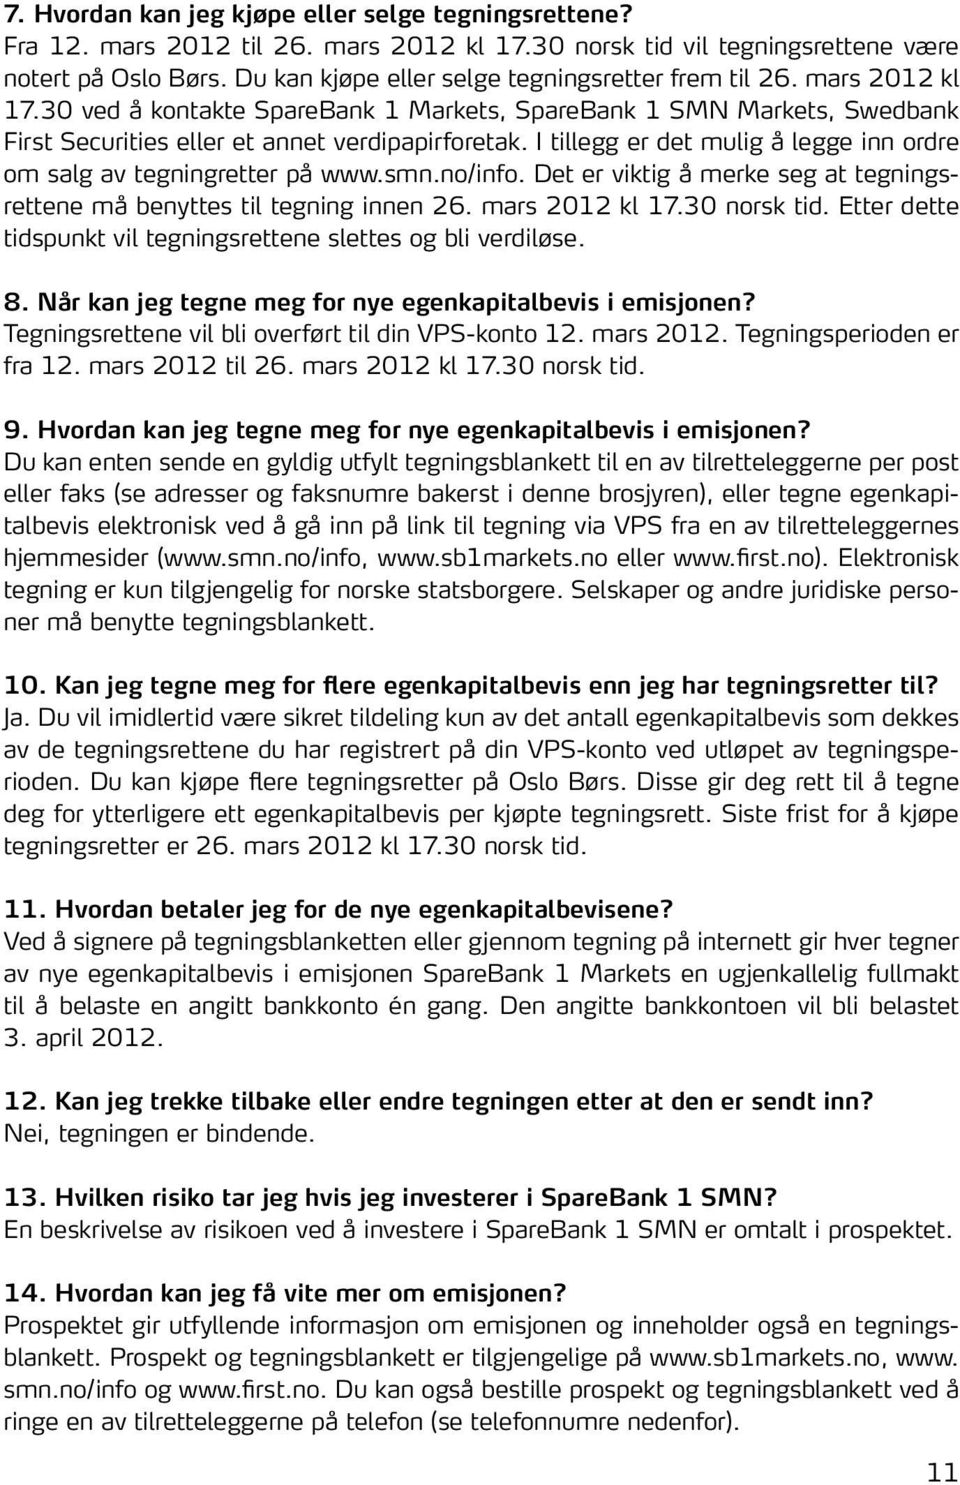 I tillegg er det mulig å legge inn ordre om salg av tegningretter på www.smn.no/info. Det er viktig å merke seg at tegningsrettene må benyttes til tegning innen 26. mars 2012 kl 17.30 norsk tid.